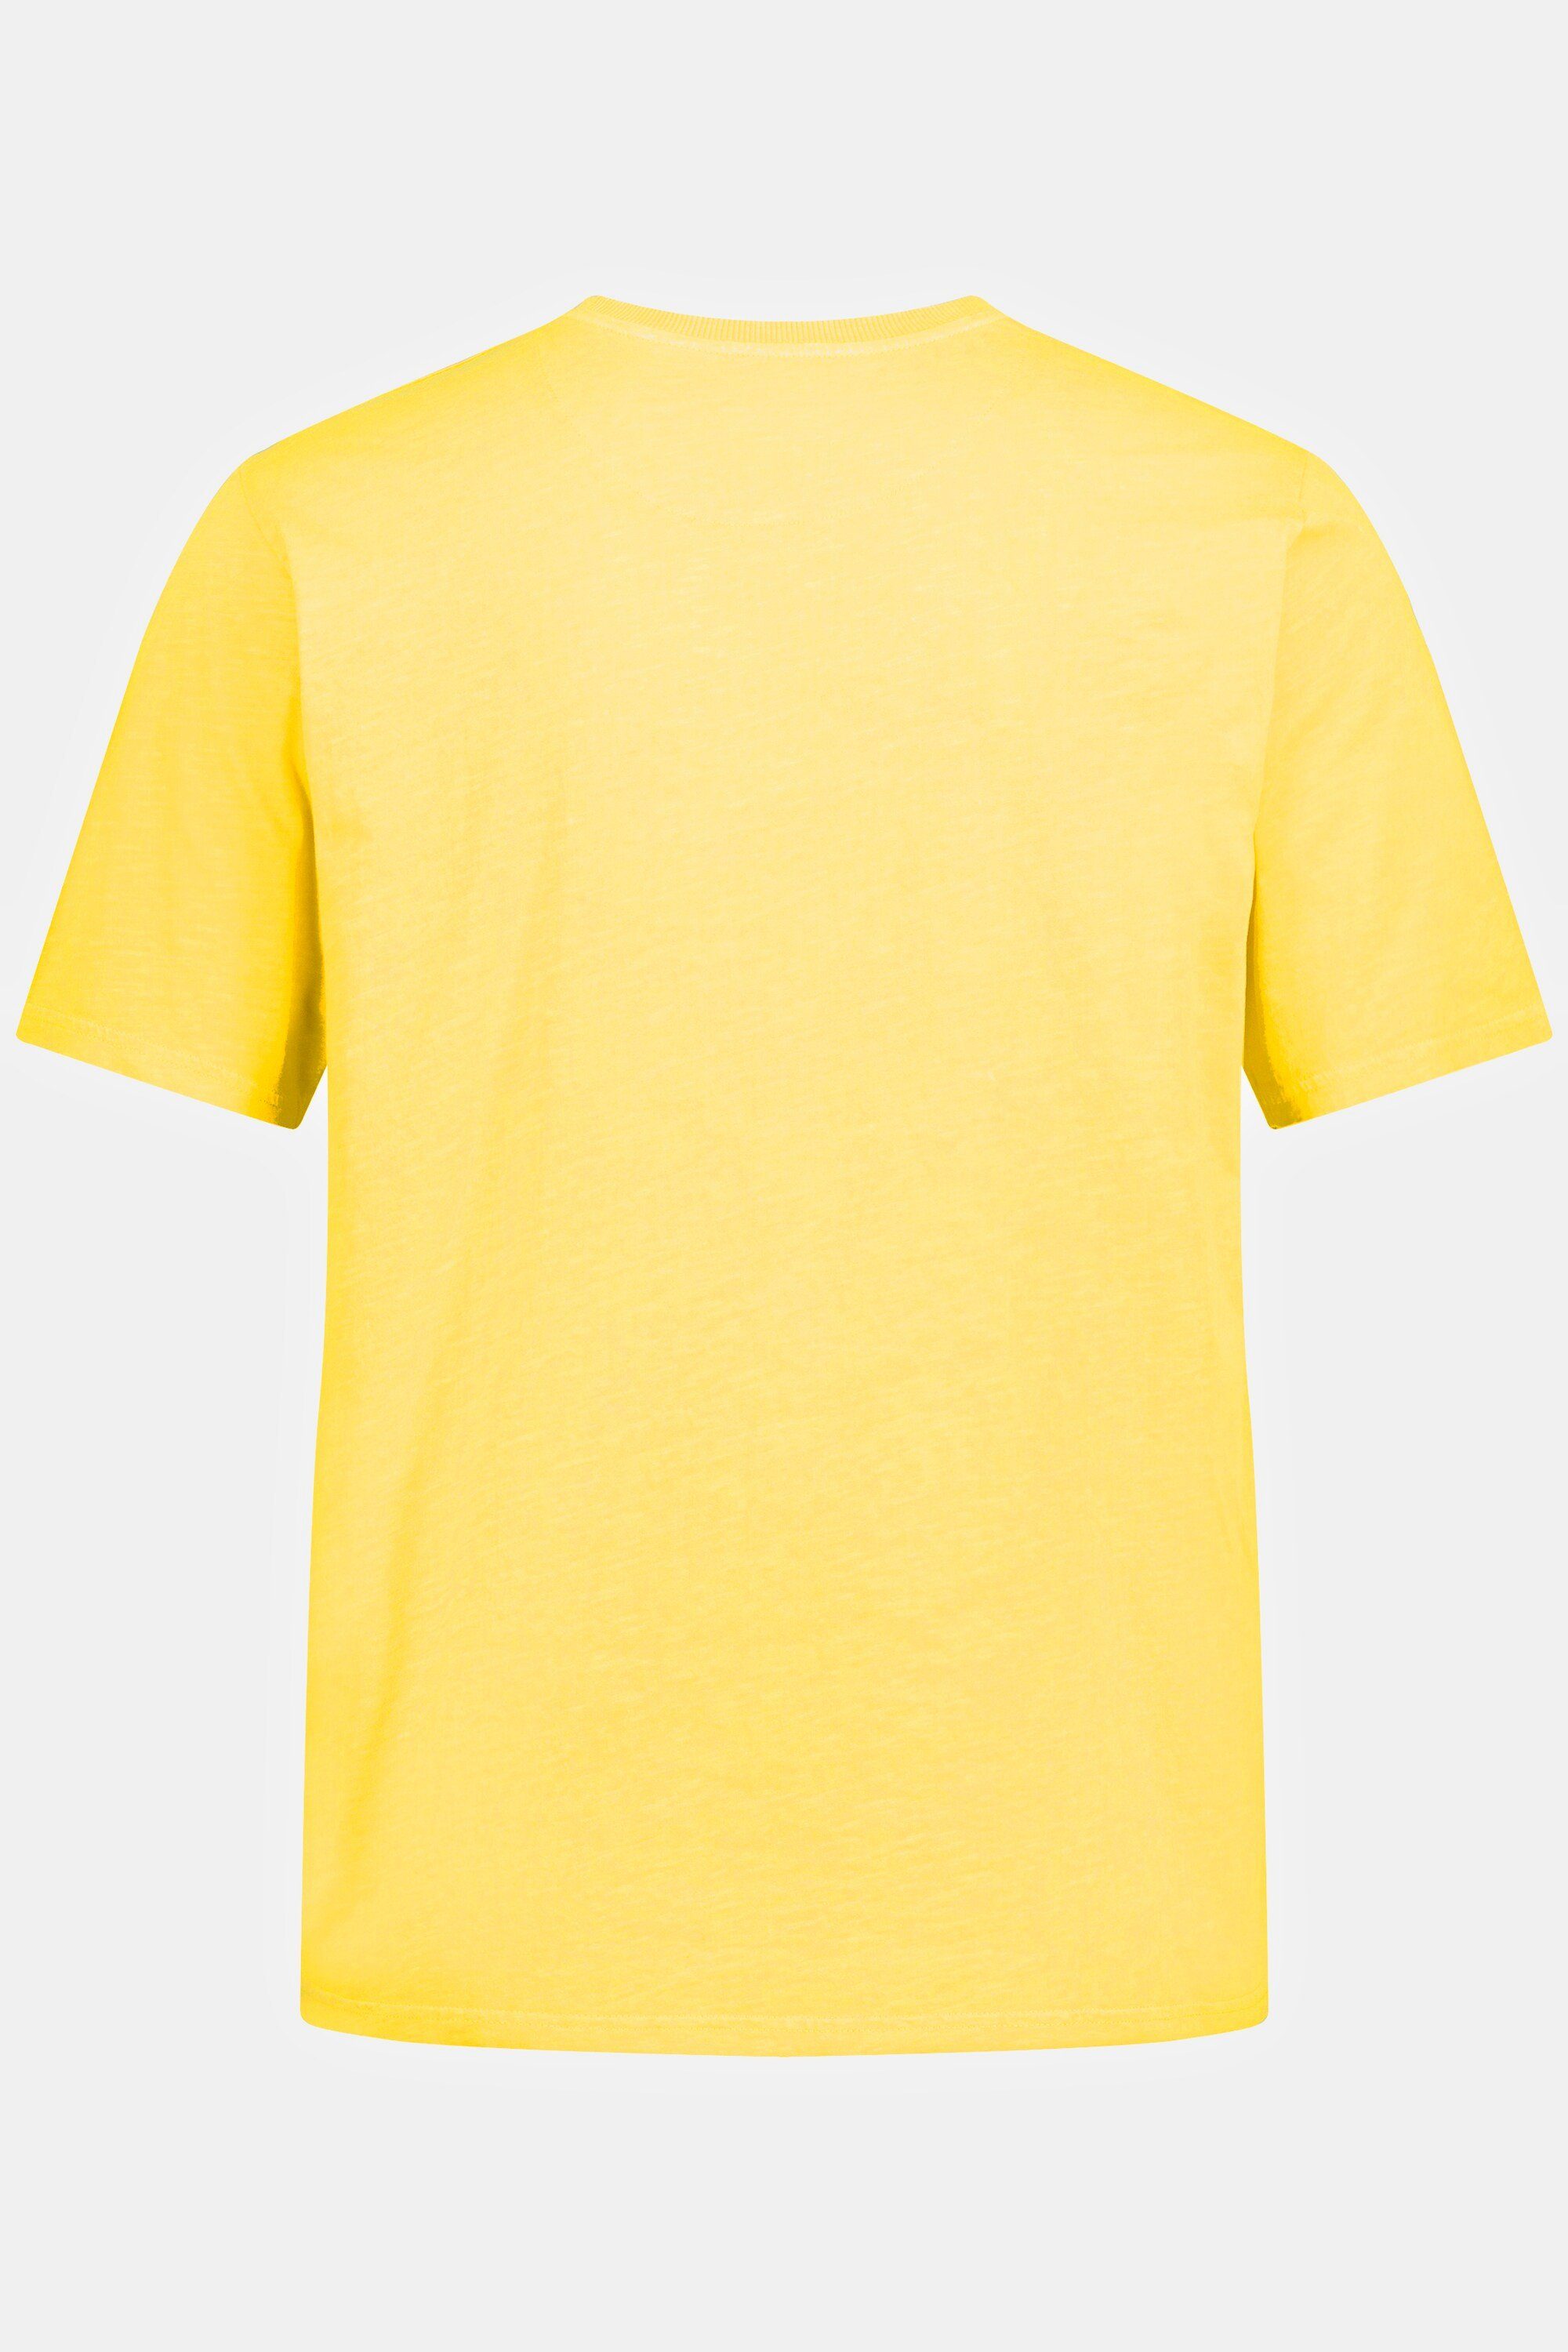 T-Shirt T-Shirt JP1880 Brusttasche hellgelb Halbarm Rundhals